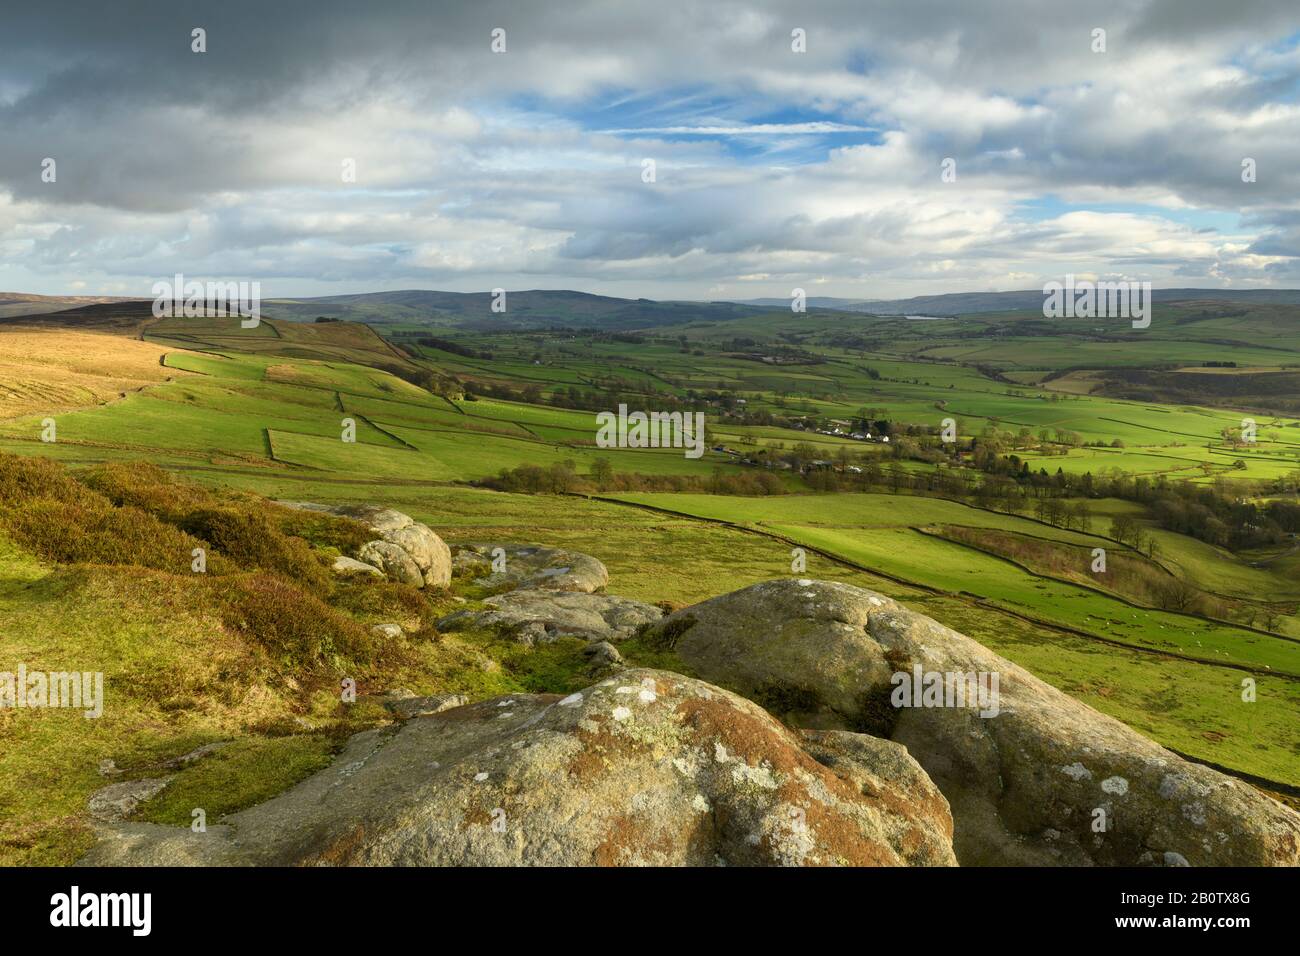 Vista panoramica rurale da Embsay Crag (colline soleggiate o brughiere, campi agricoli in valle, alte colline montane, cielo drammatico) - North Yorkshire, Inghilterra, Regno Unito. Foto Stock